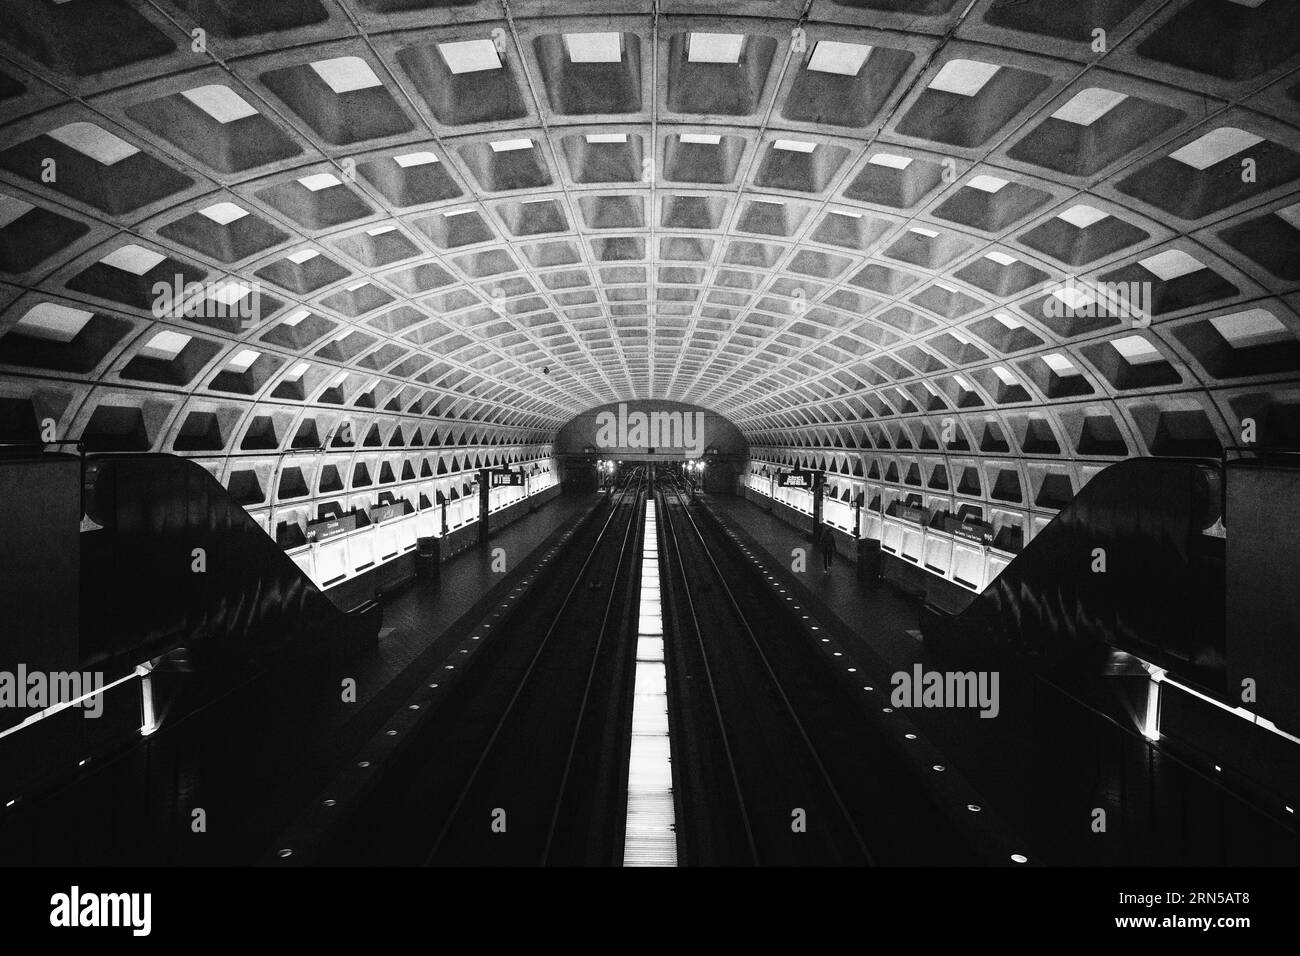 WASHINGTON DC, Stati Uniti - i pendolari si spostano sulla piattaforma di una stazione della metropolitana di Washington DC, che rappresenta uno dei principali centri di trasporto che servono la capitale della nazione. Il sistema metropolitano svolge un ruolo essenziale nel transito quotidiano di migliaia di persone, collegando quartieri, quartieri commerciali e punti di interesse. Foto Stock